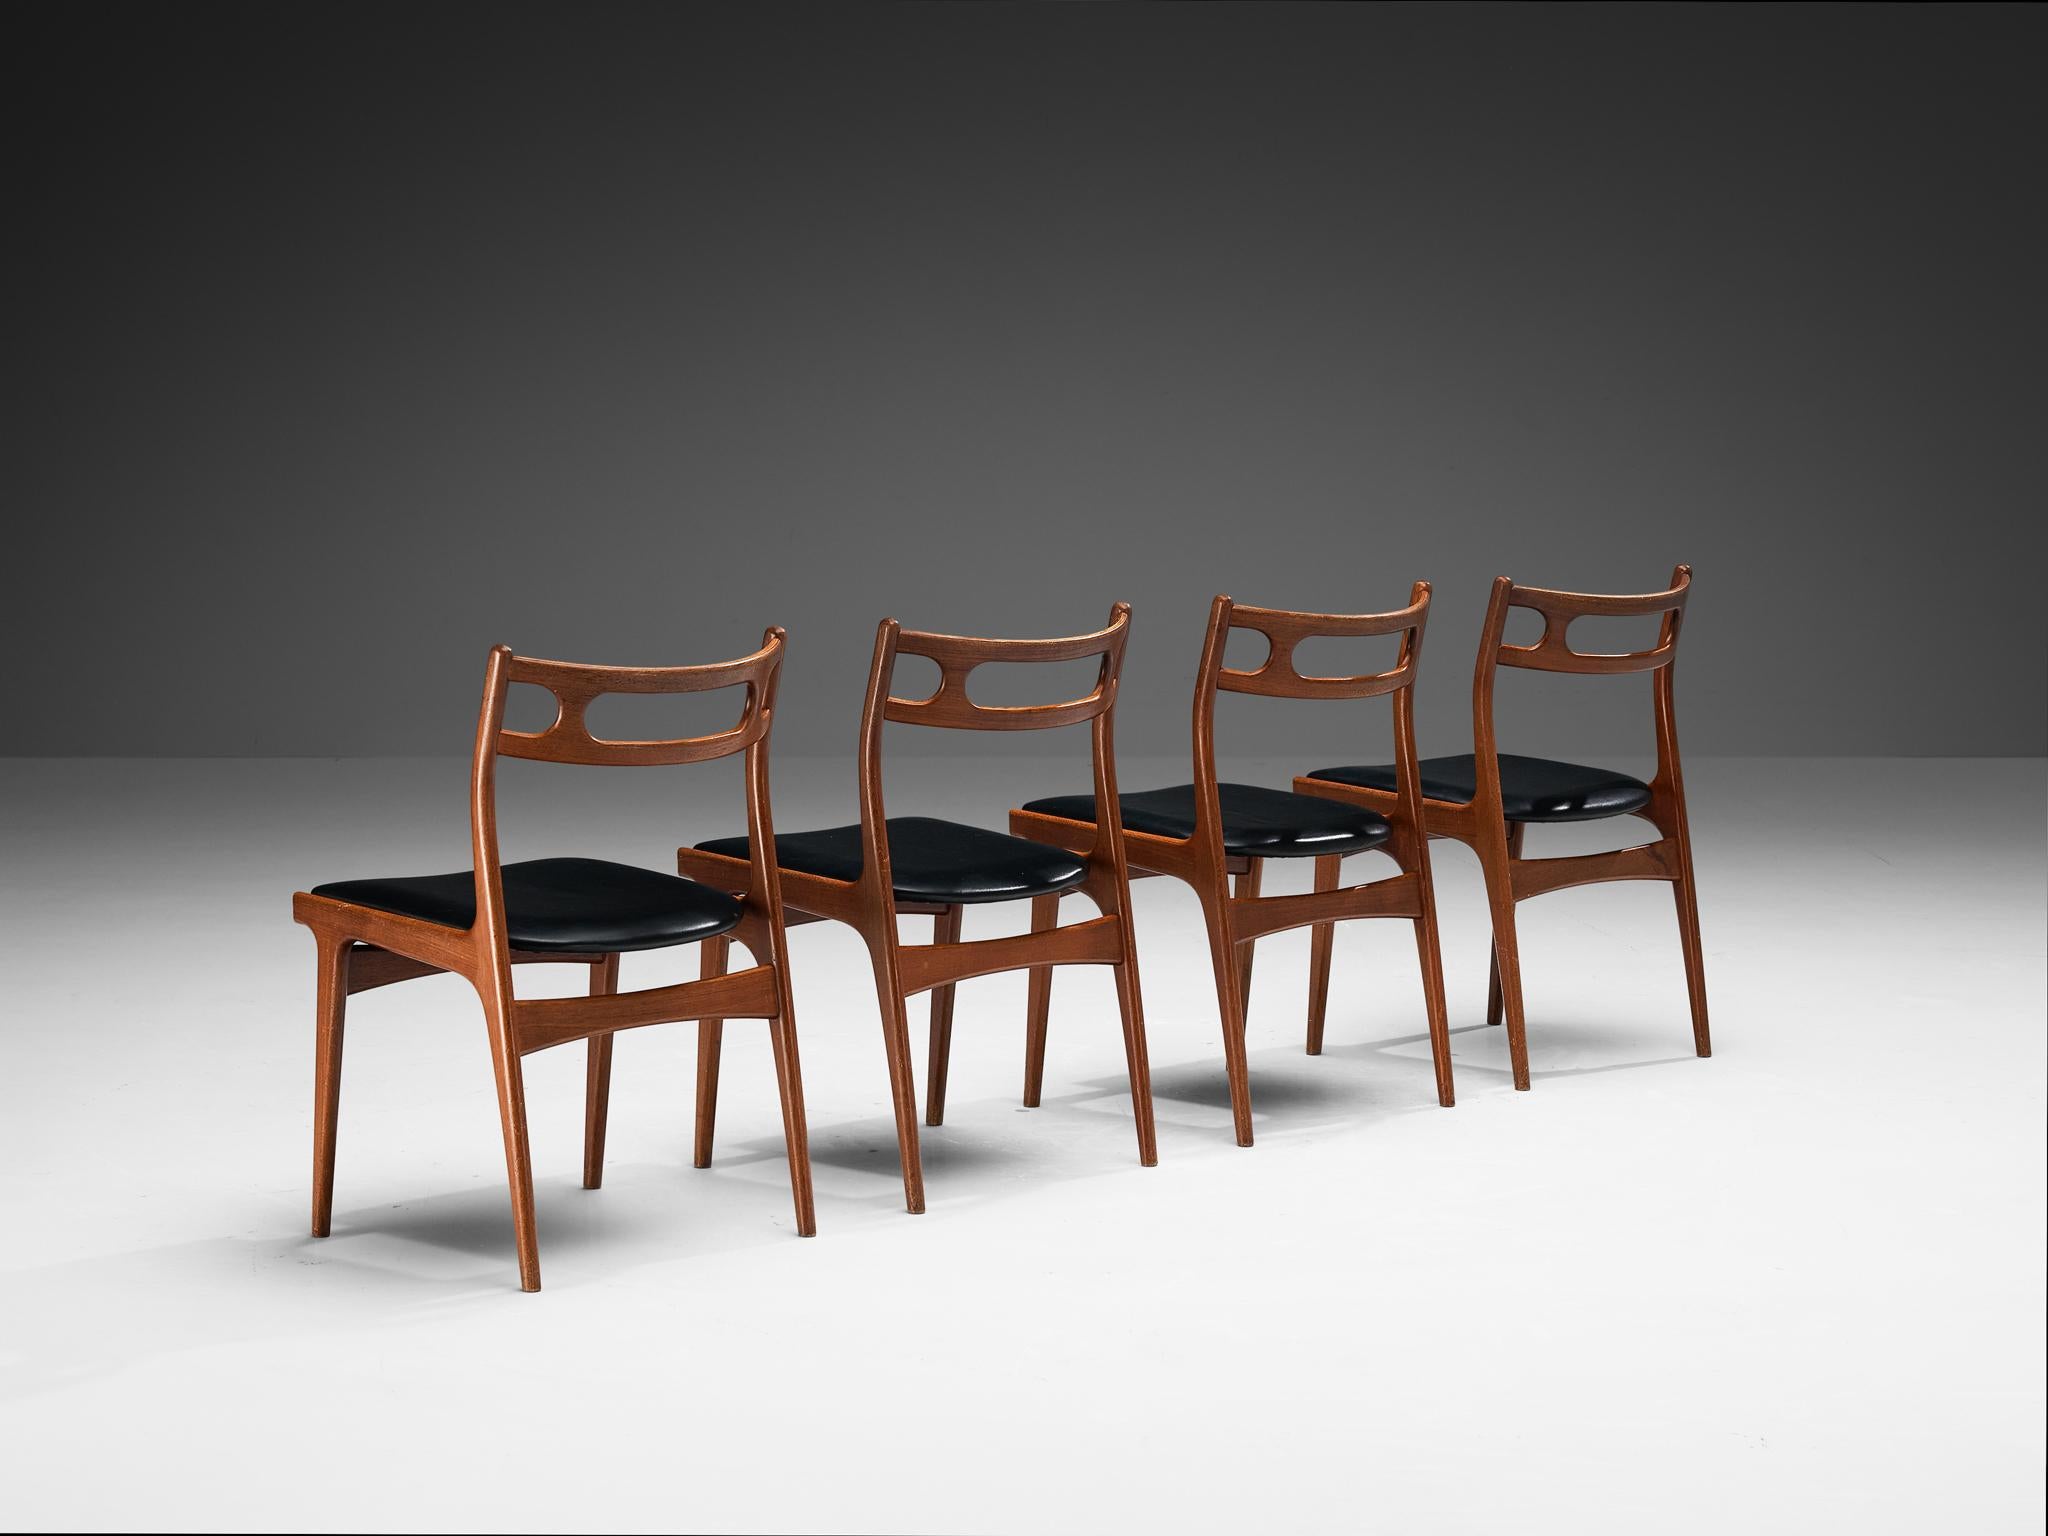 Johannes Andersen pour Uldum Møbelfabrik, ensemble de quatre chaises de salle à manger, modèle '138', teck, faux cuir, Danemark, années 1960

Un ensemble de chaises de salle à manger élégantes créées par le designer danois Johannes Eleg et produites